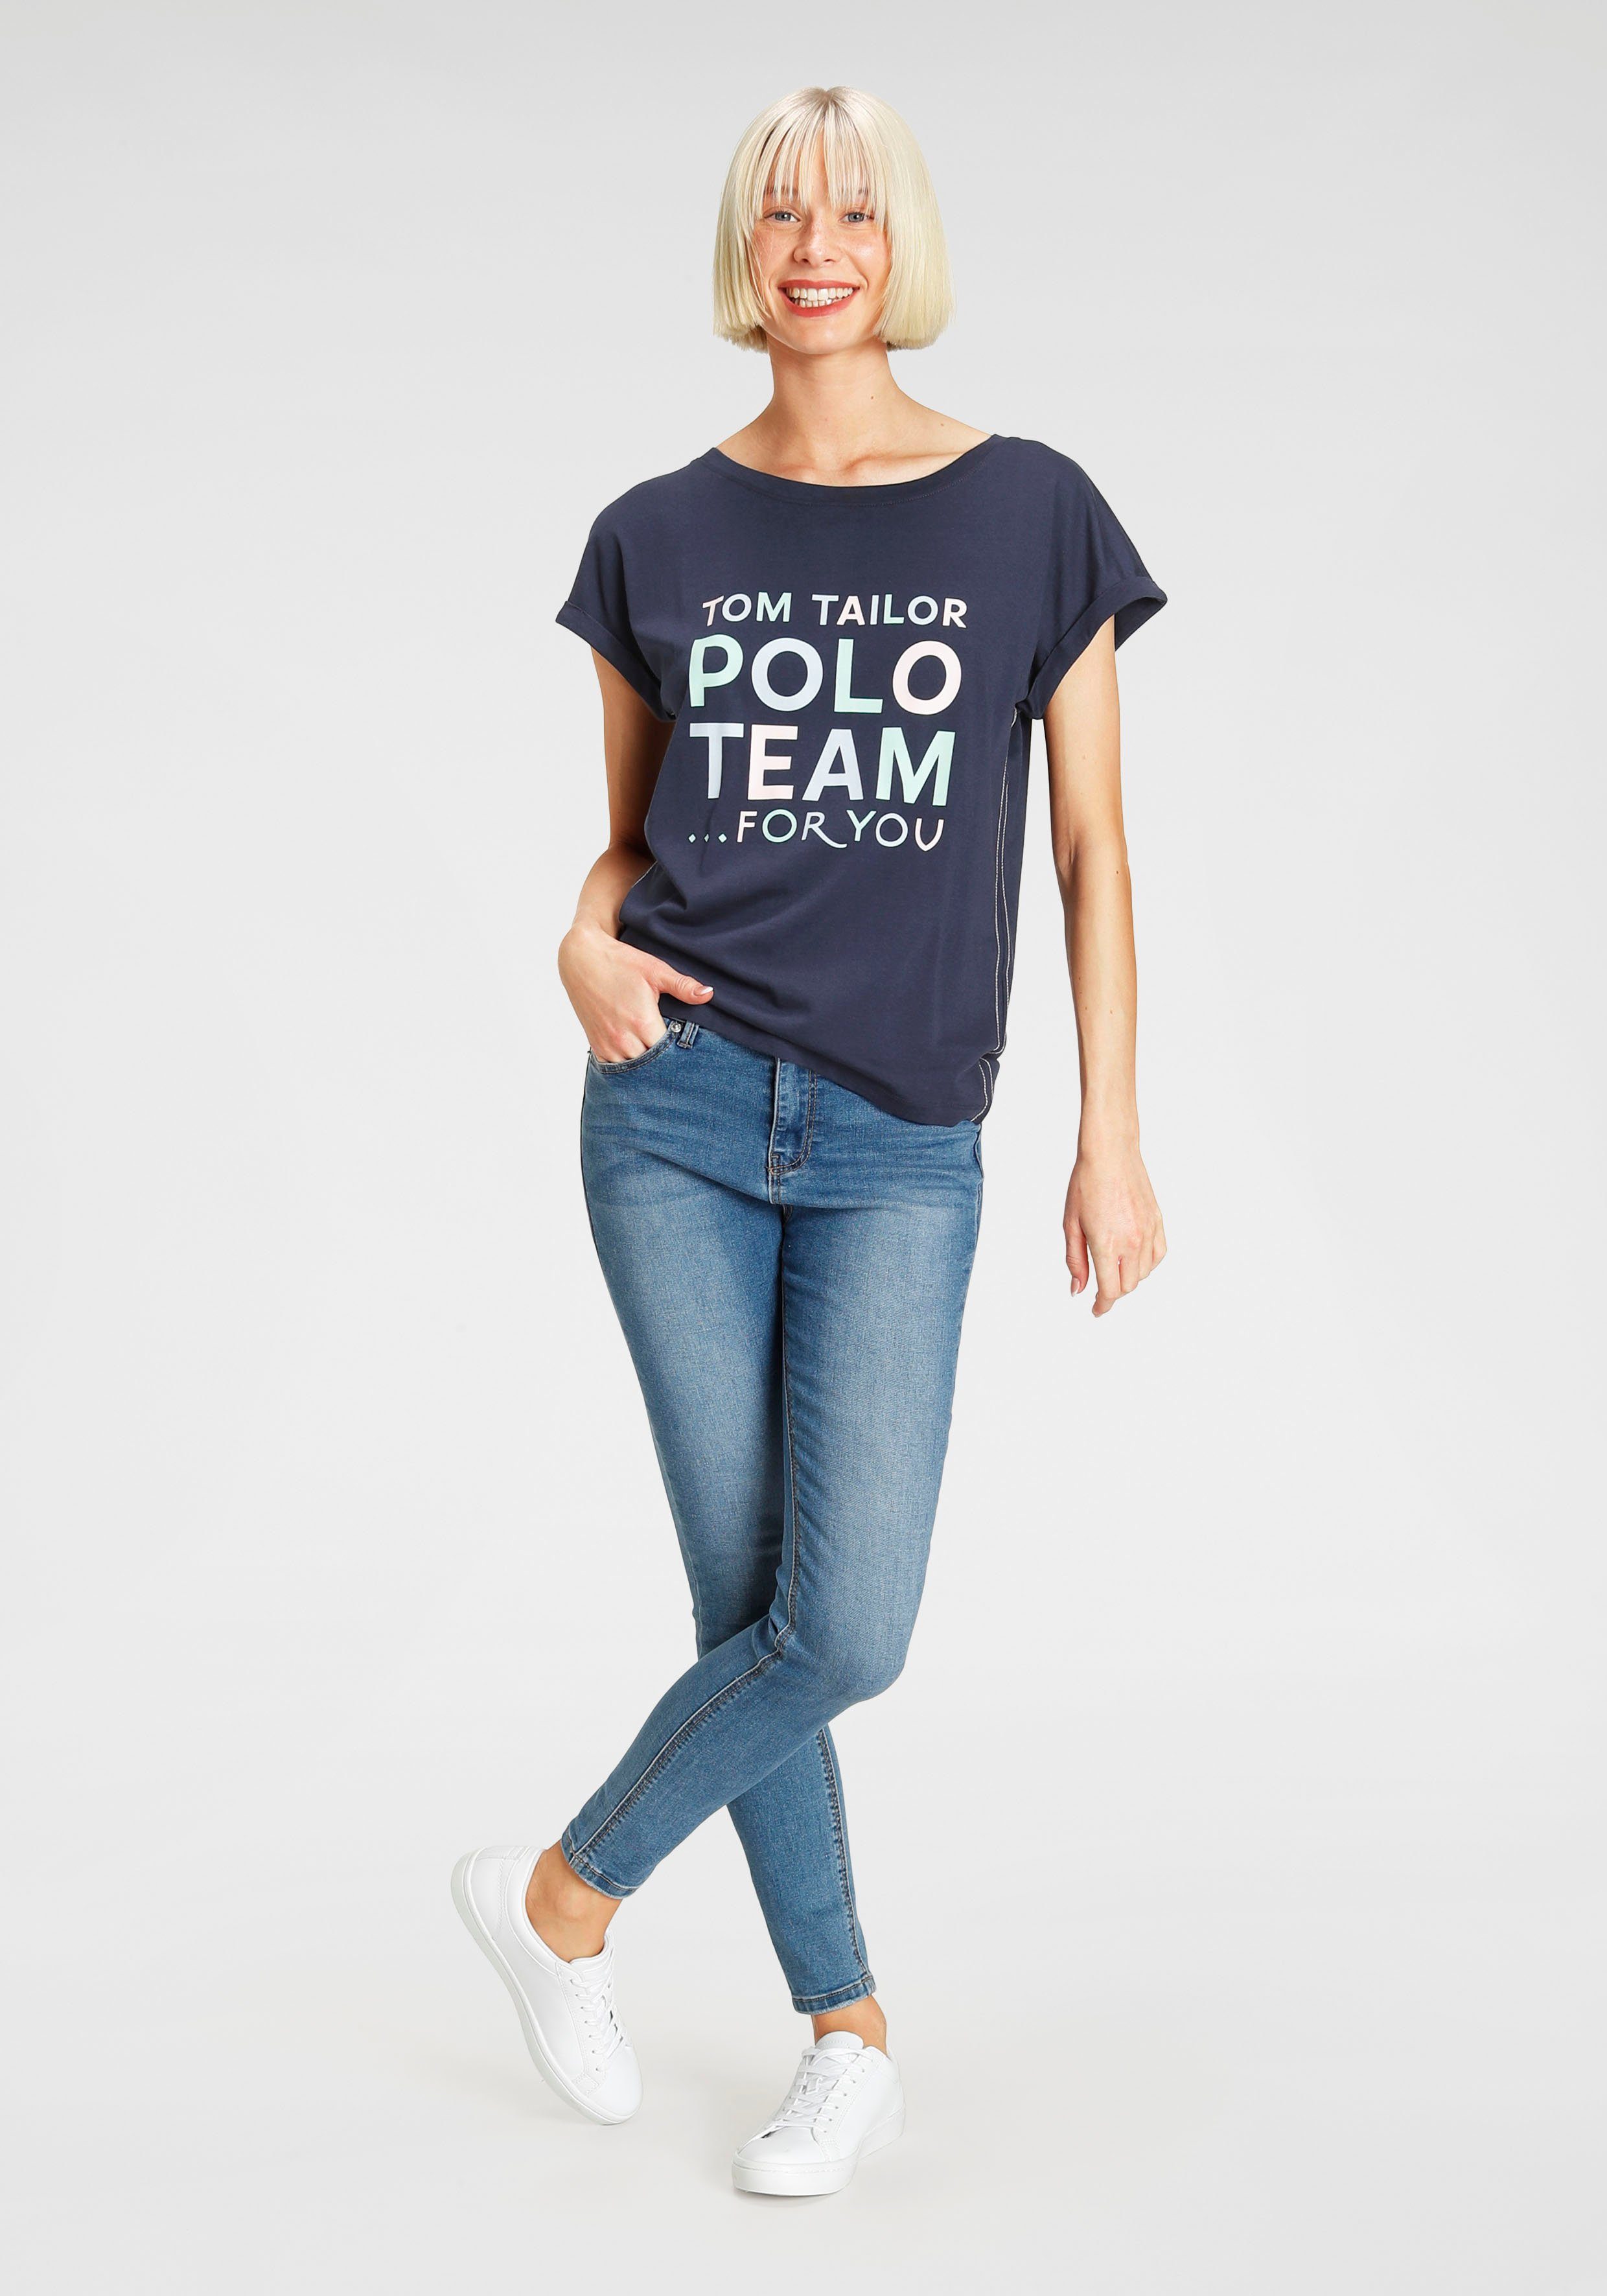 TOM TAILOR farbenfrohen Team Print-Shirt Polo großem Logo-Print